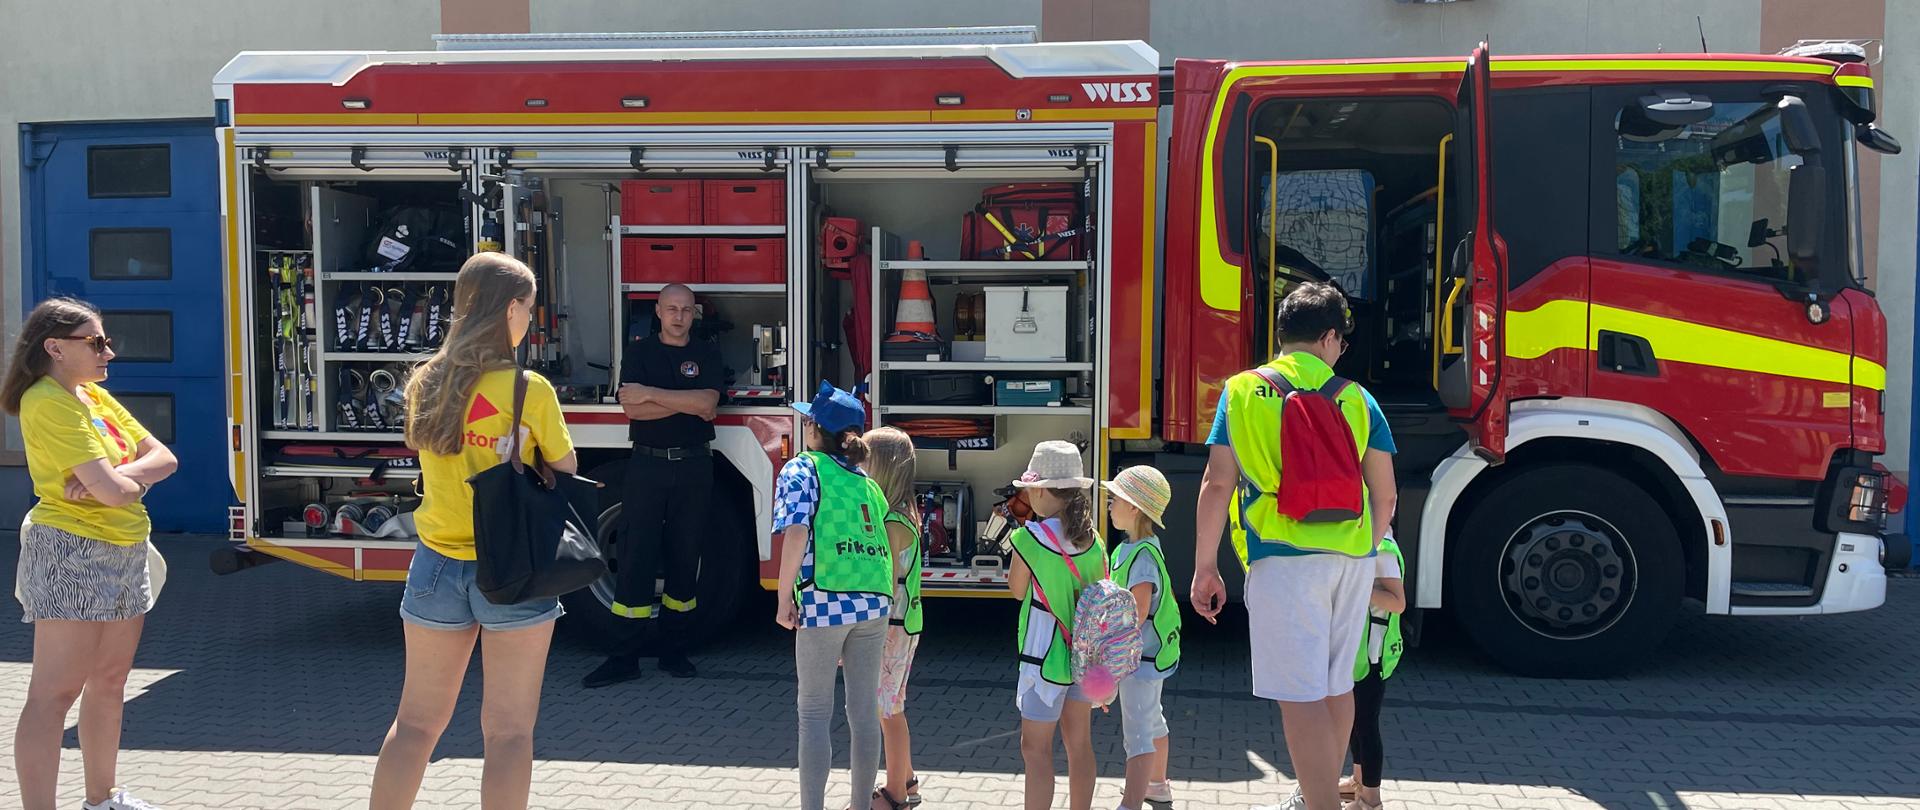 Na zdjęciu widoczny jest samochód strażacki, strażak pokazujący wyposażenie samochodu oraz grupa dzieci z opiekunami